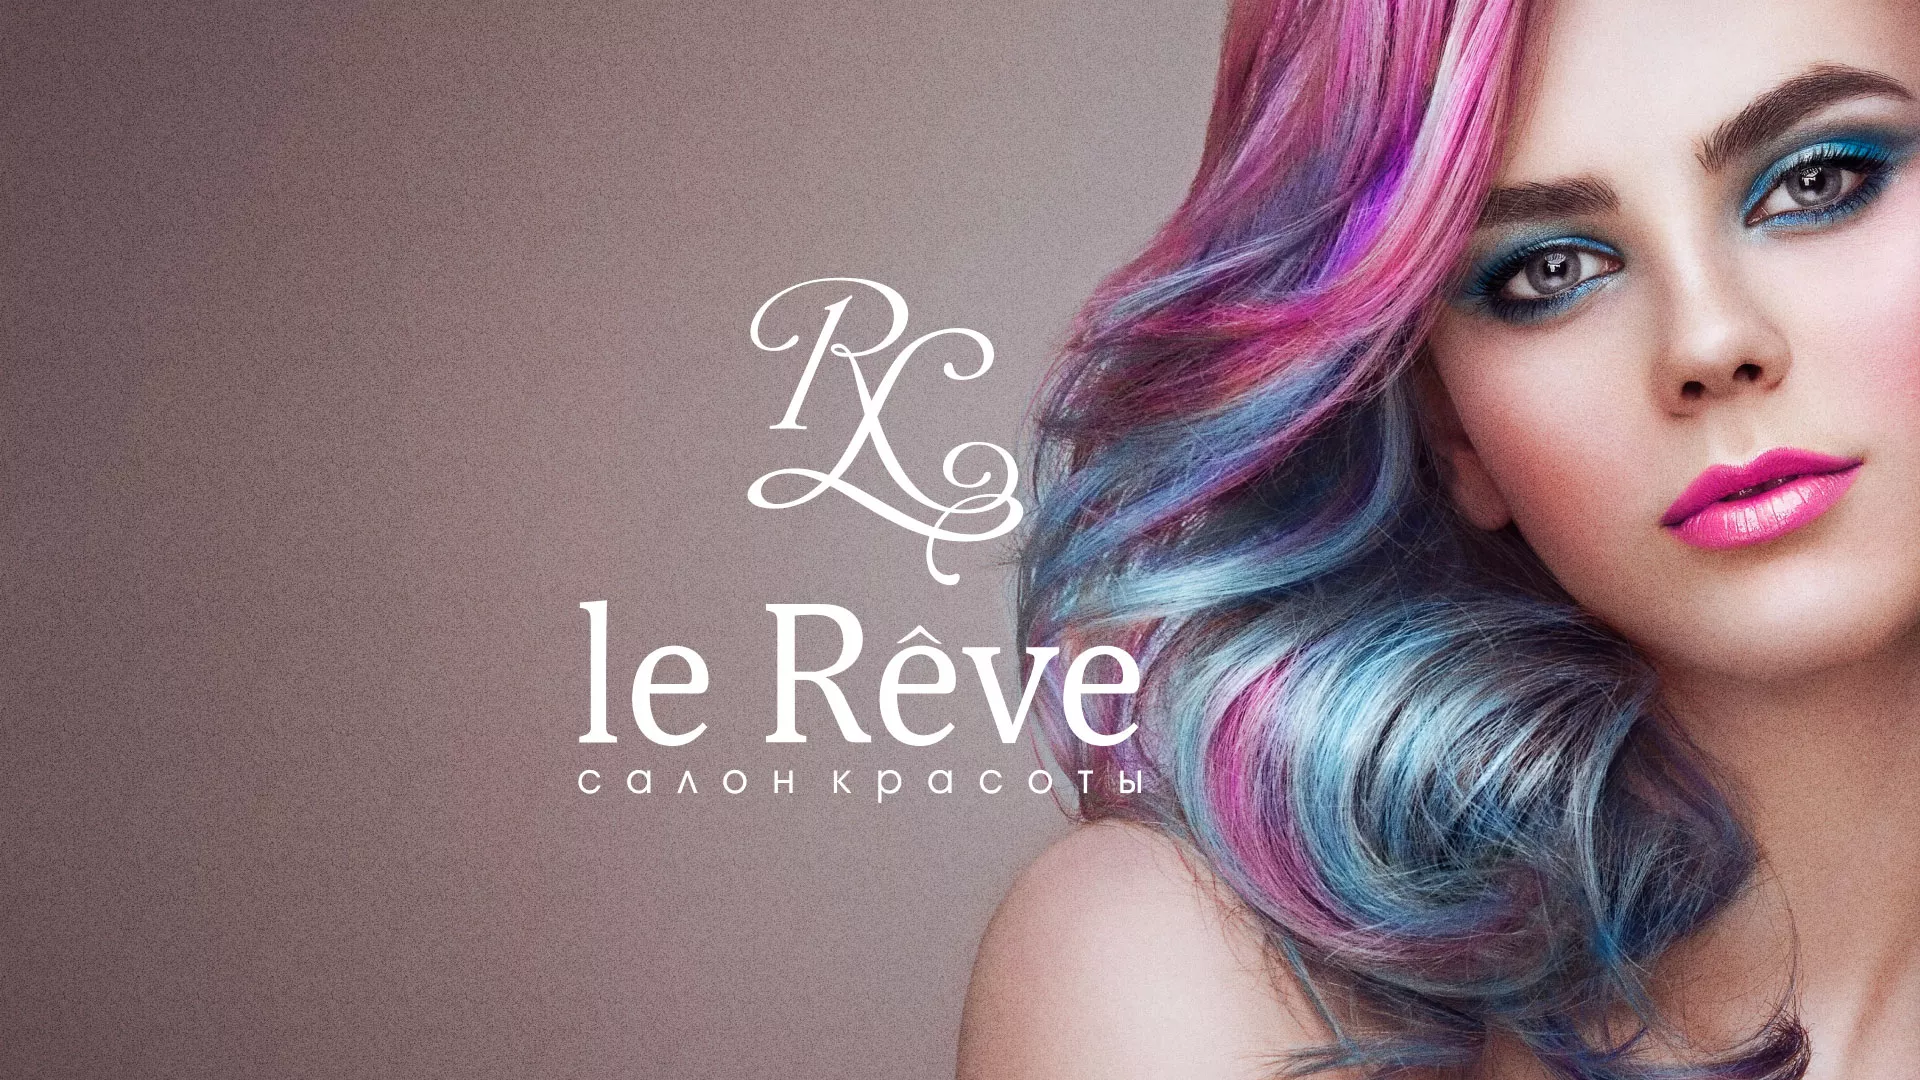 Создание сайта для салона красоты «Le Reve» в Выксе